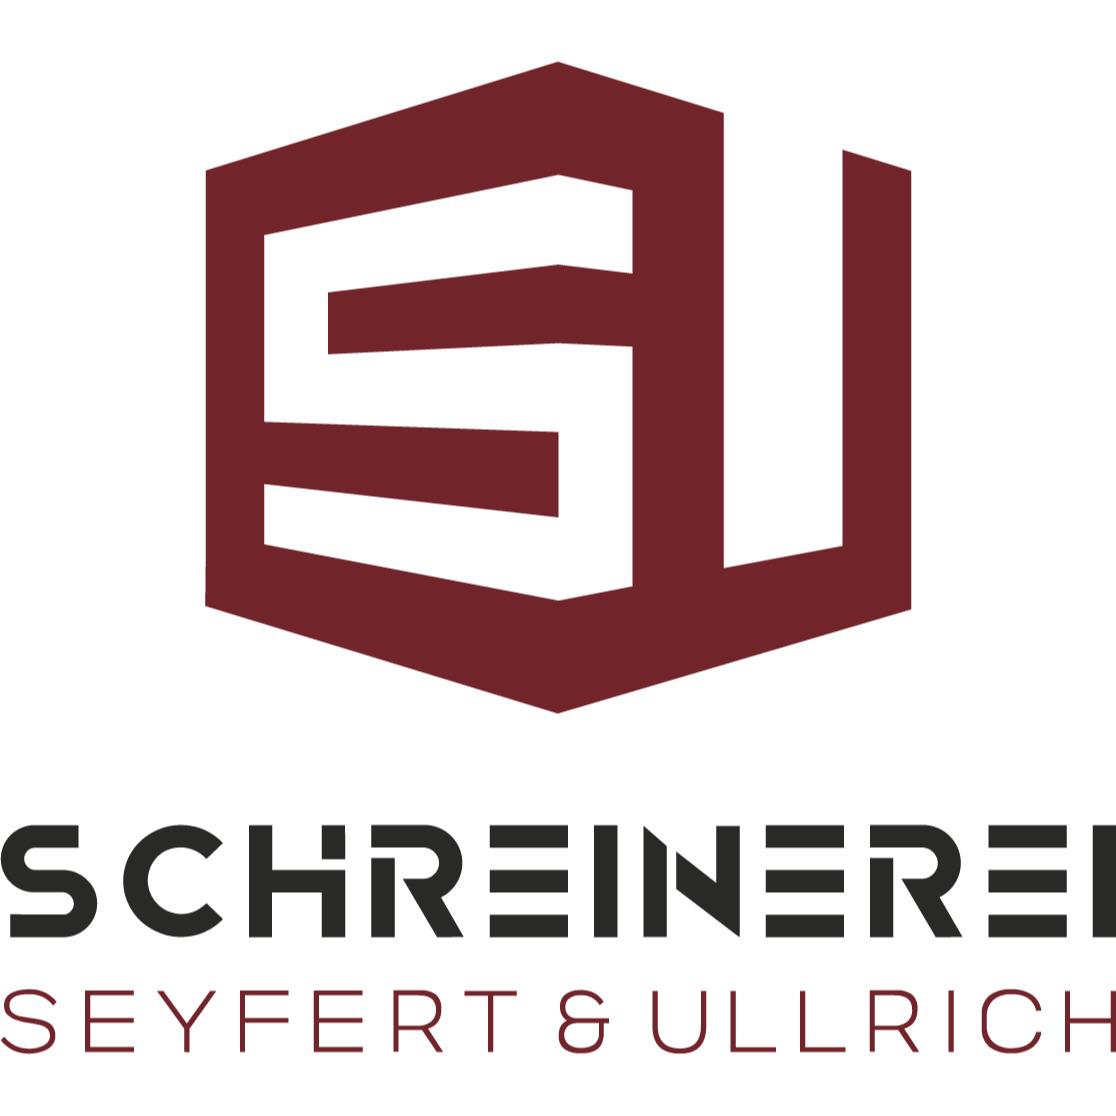 Schreinerei Seyfert & Ullrich in Fürth im Odenwald - Logo